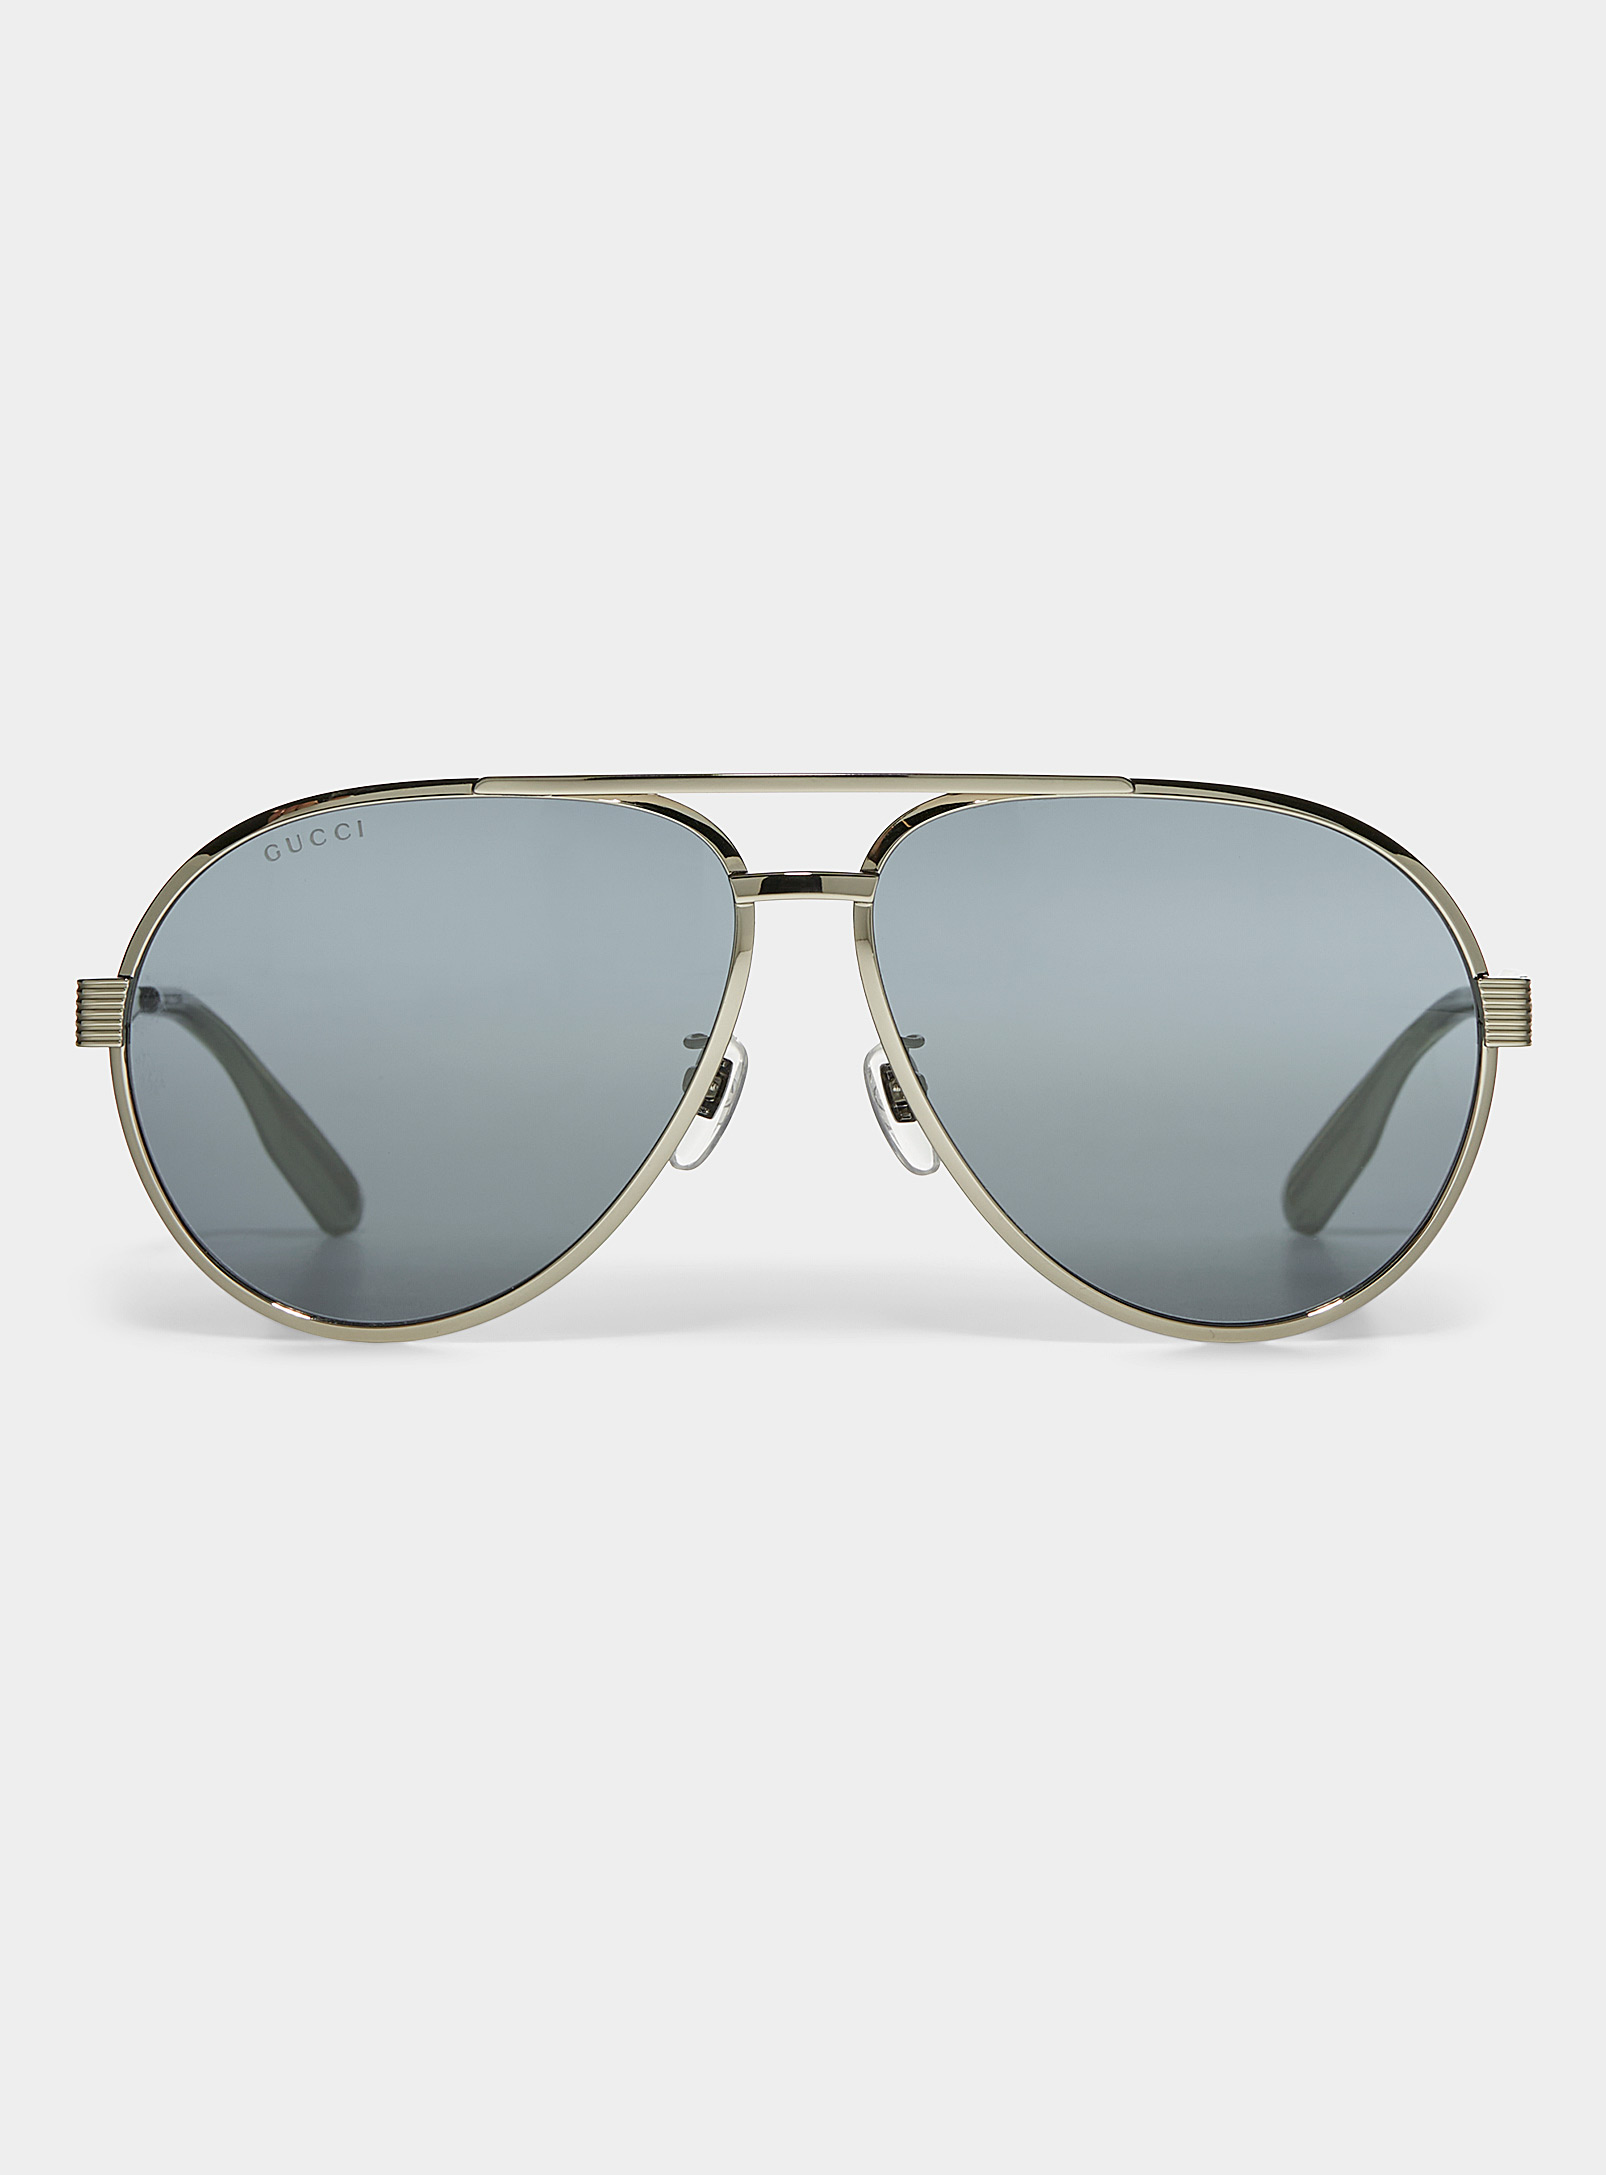 Gucci - Les lunettes de soleil navigateur monture argentée